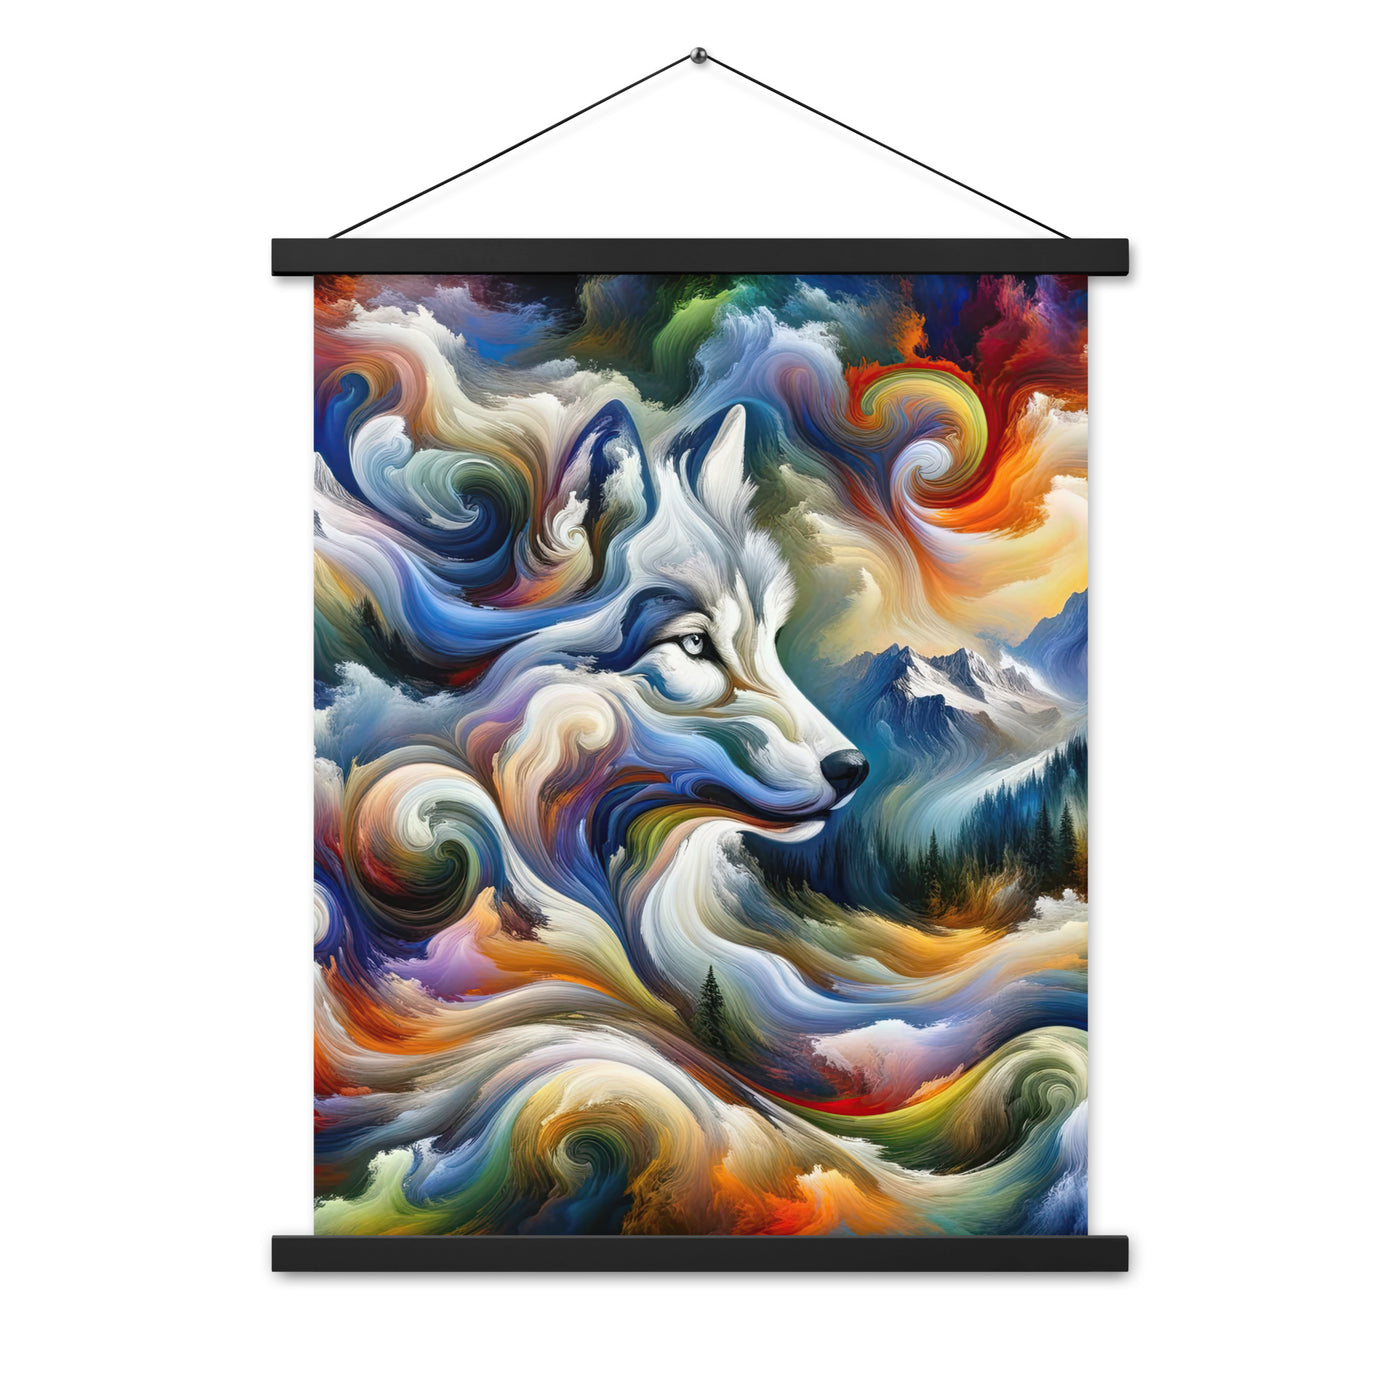 Abstraktes Alpen Gemälde: Wirbelnde Farben und Majestätischer Wolf, Silhouette (AN) - Premium Poster mit Aufhängung xxx yyy zzz 45.7 x 61 cm